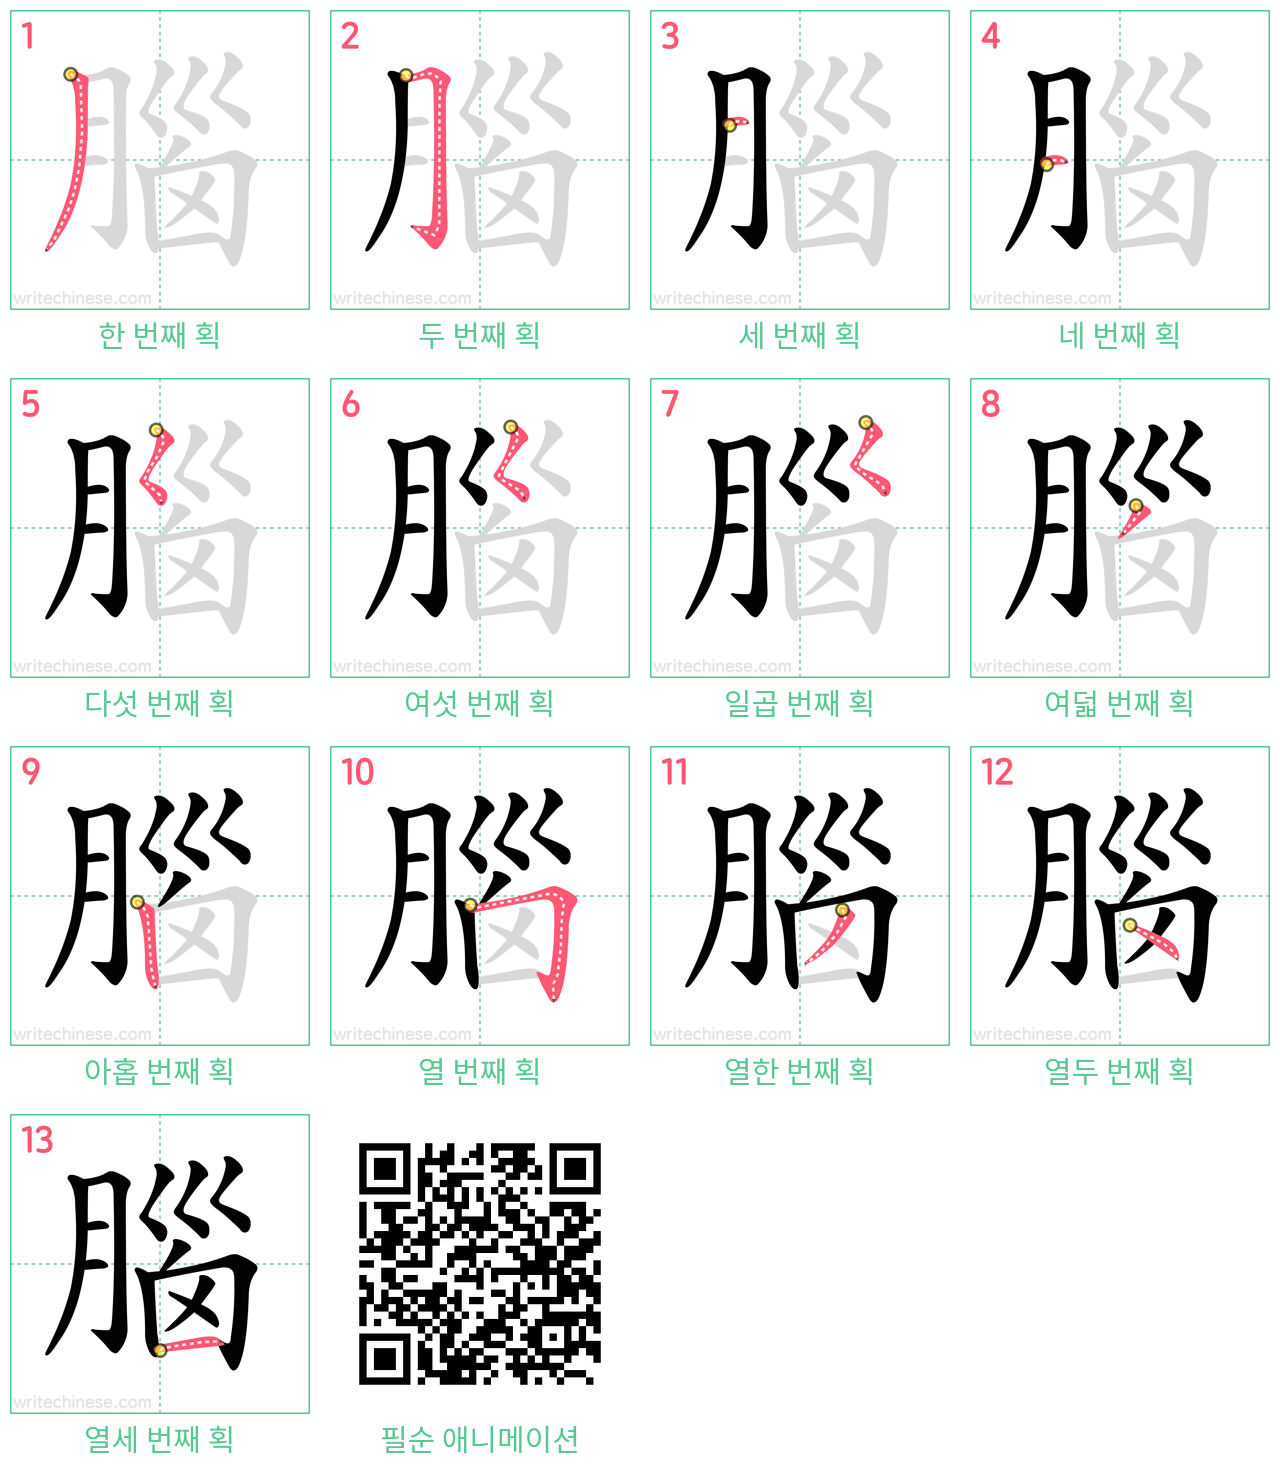 腦 step-by-step stroke order diagrams